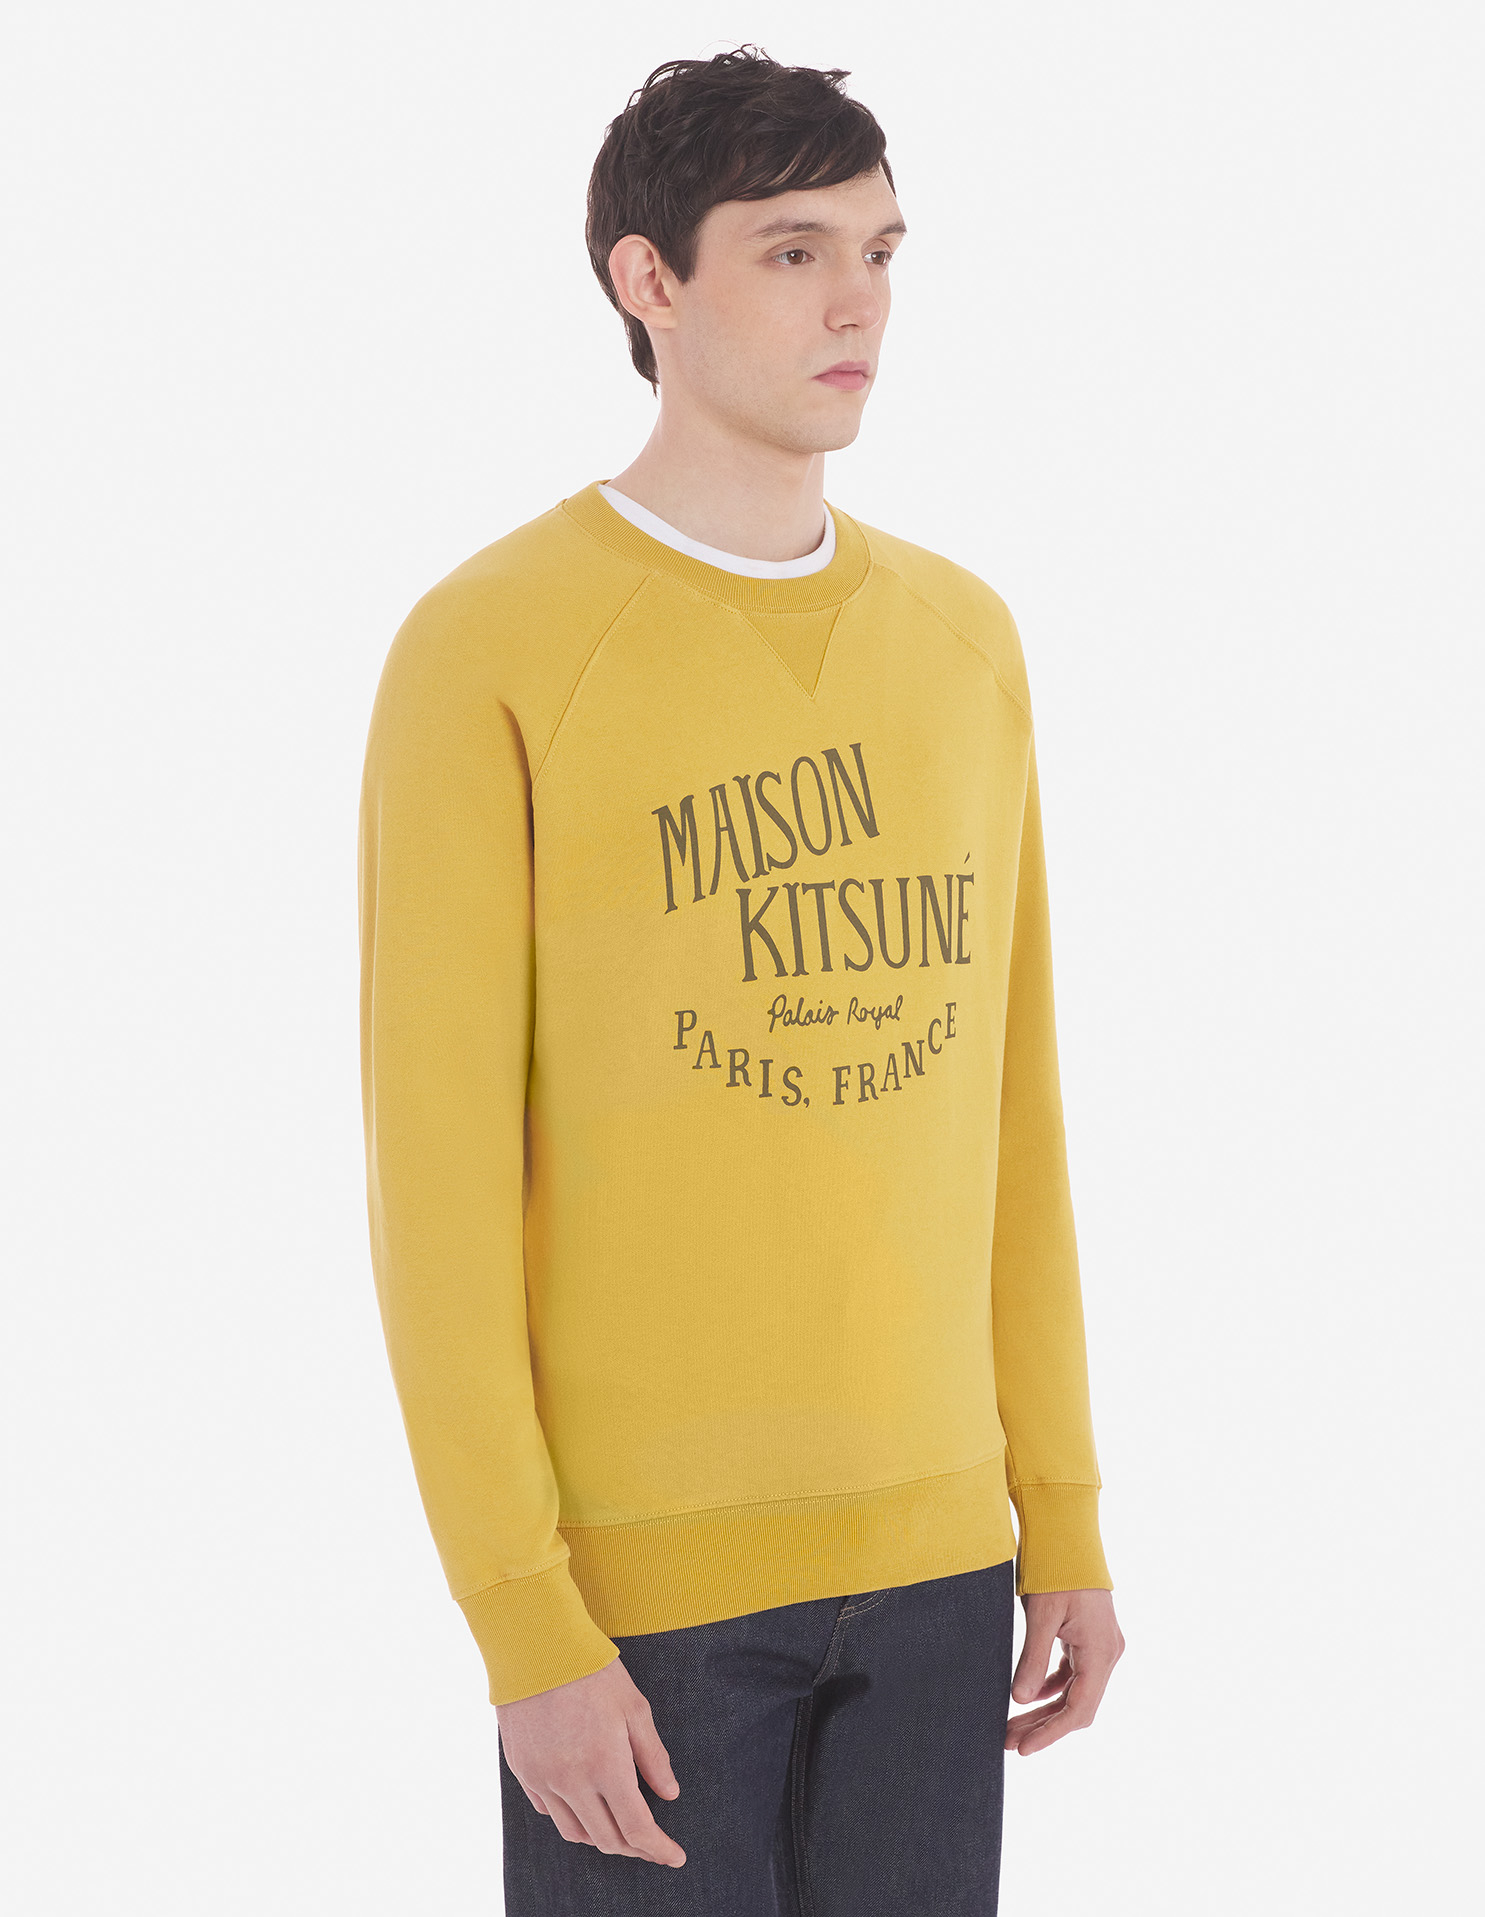 メゾン キツネ パレロワイヤル クラシック スウェットシャツ | Maison